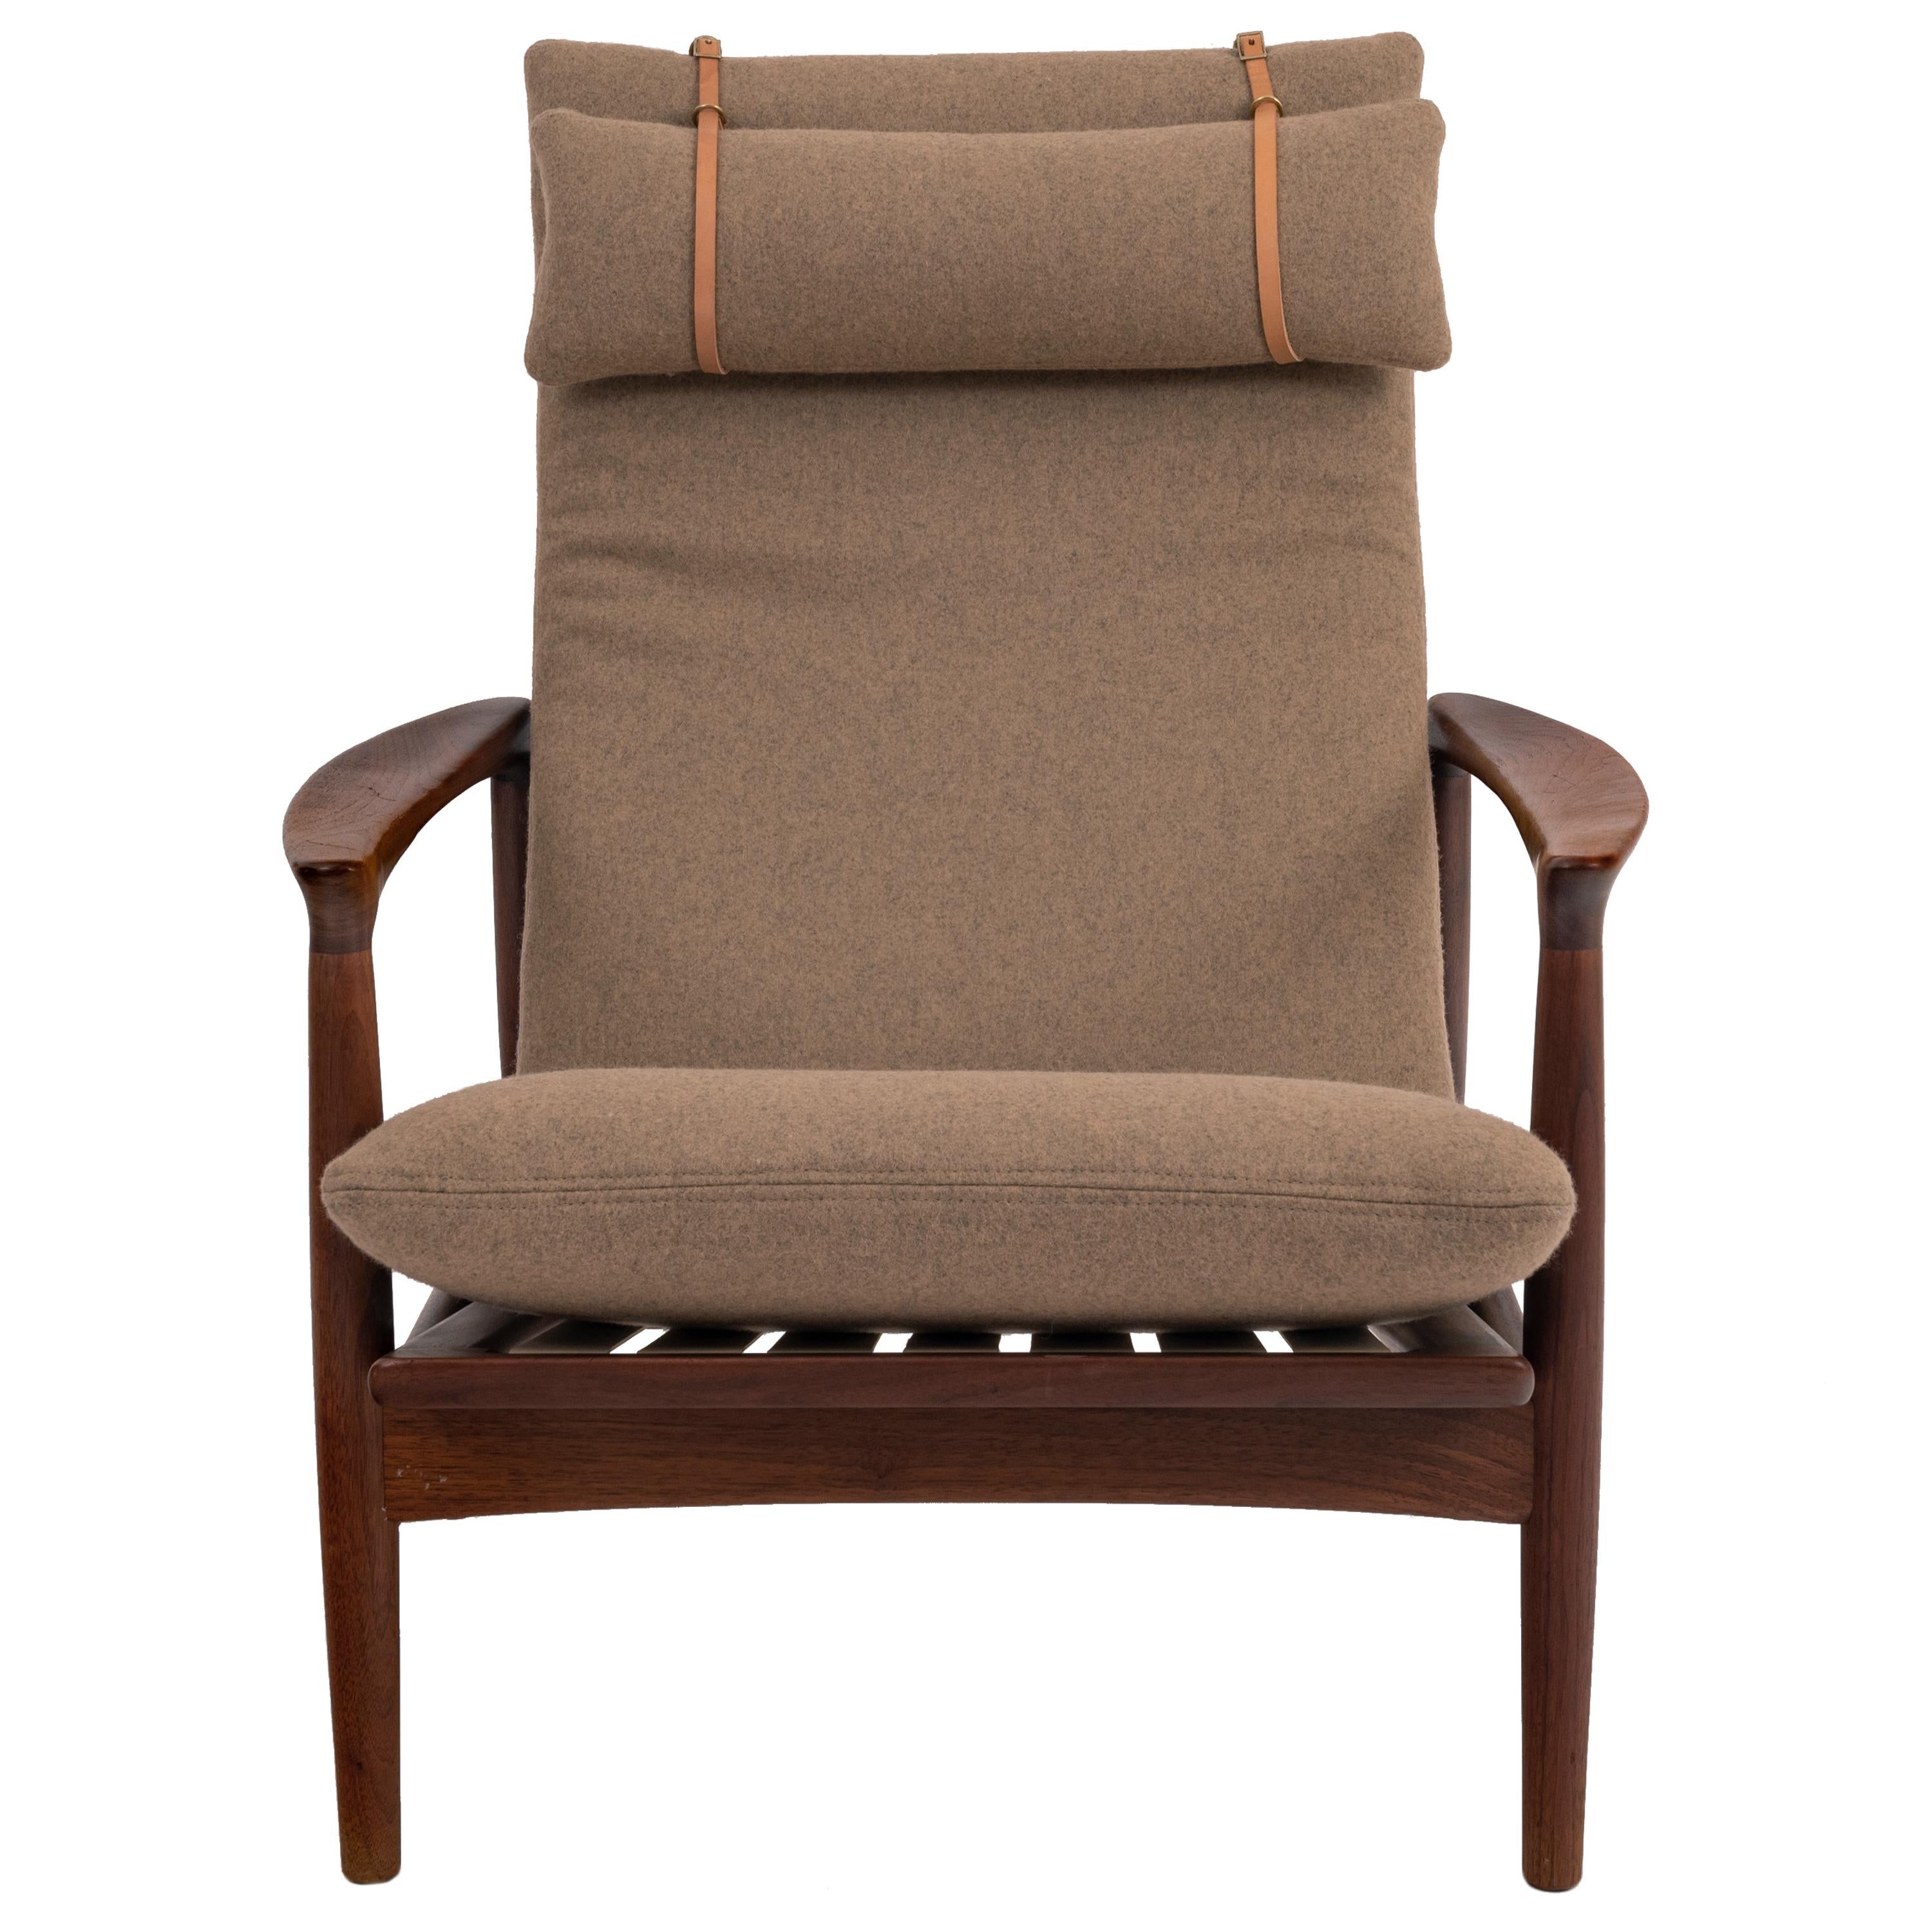 Ein guter original dänischer Mid Century Modern Teakholz & gepolsterter Sessel, entworfen von Arne Vodder, um 1960.
Die Stuhlkissen wurden gerade professionell neu gepolstert, um einen sehr hohen Standard in einer Qualität hellbraune Wolle, mit